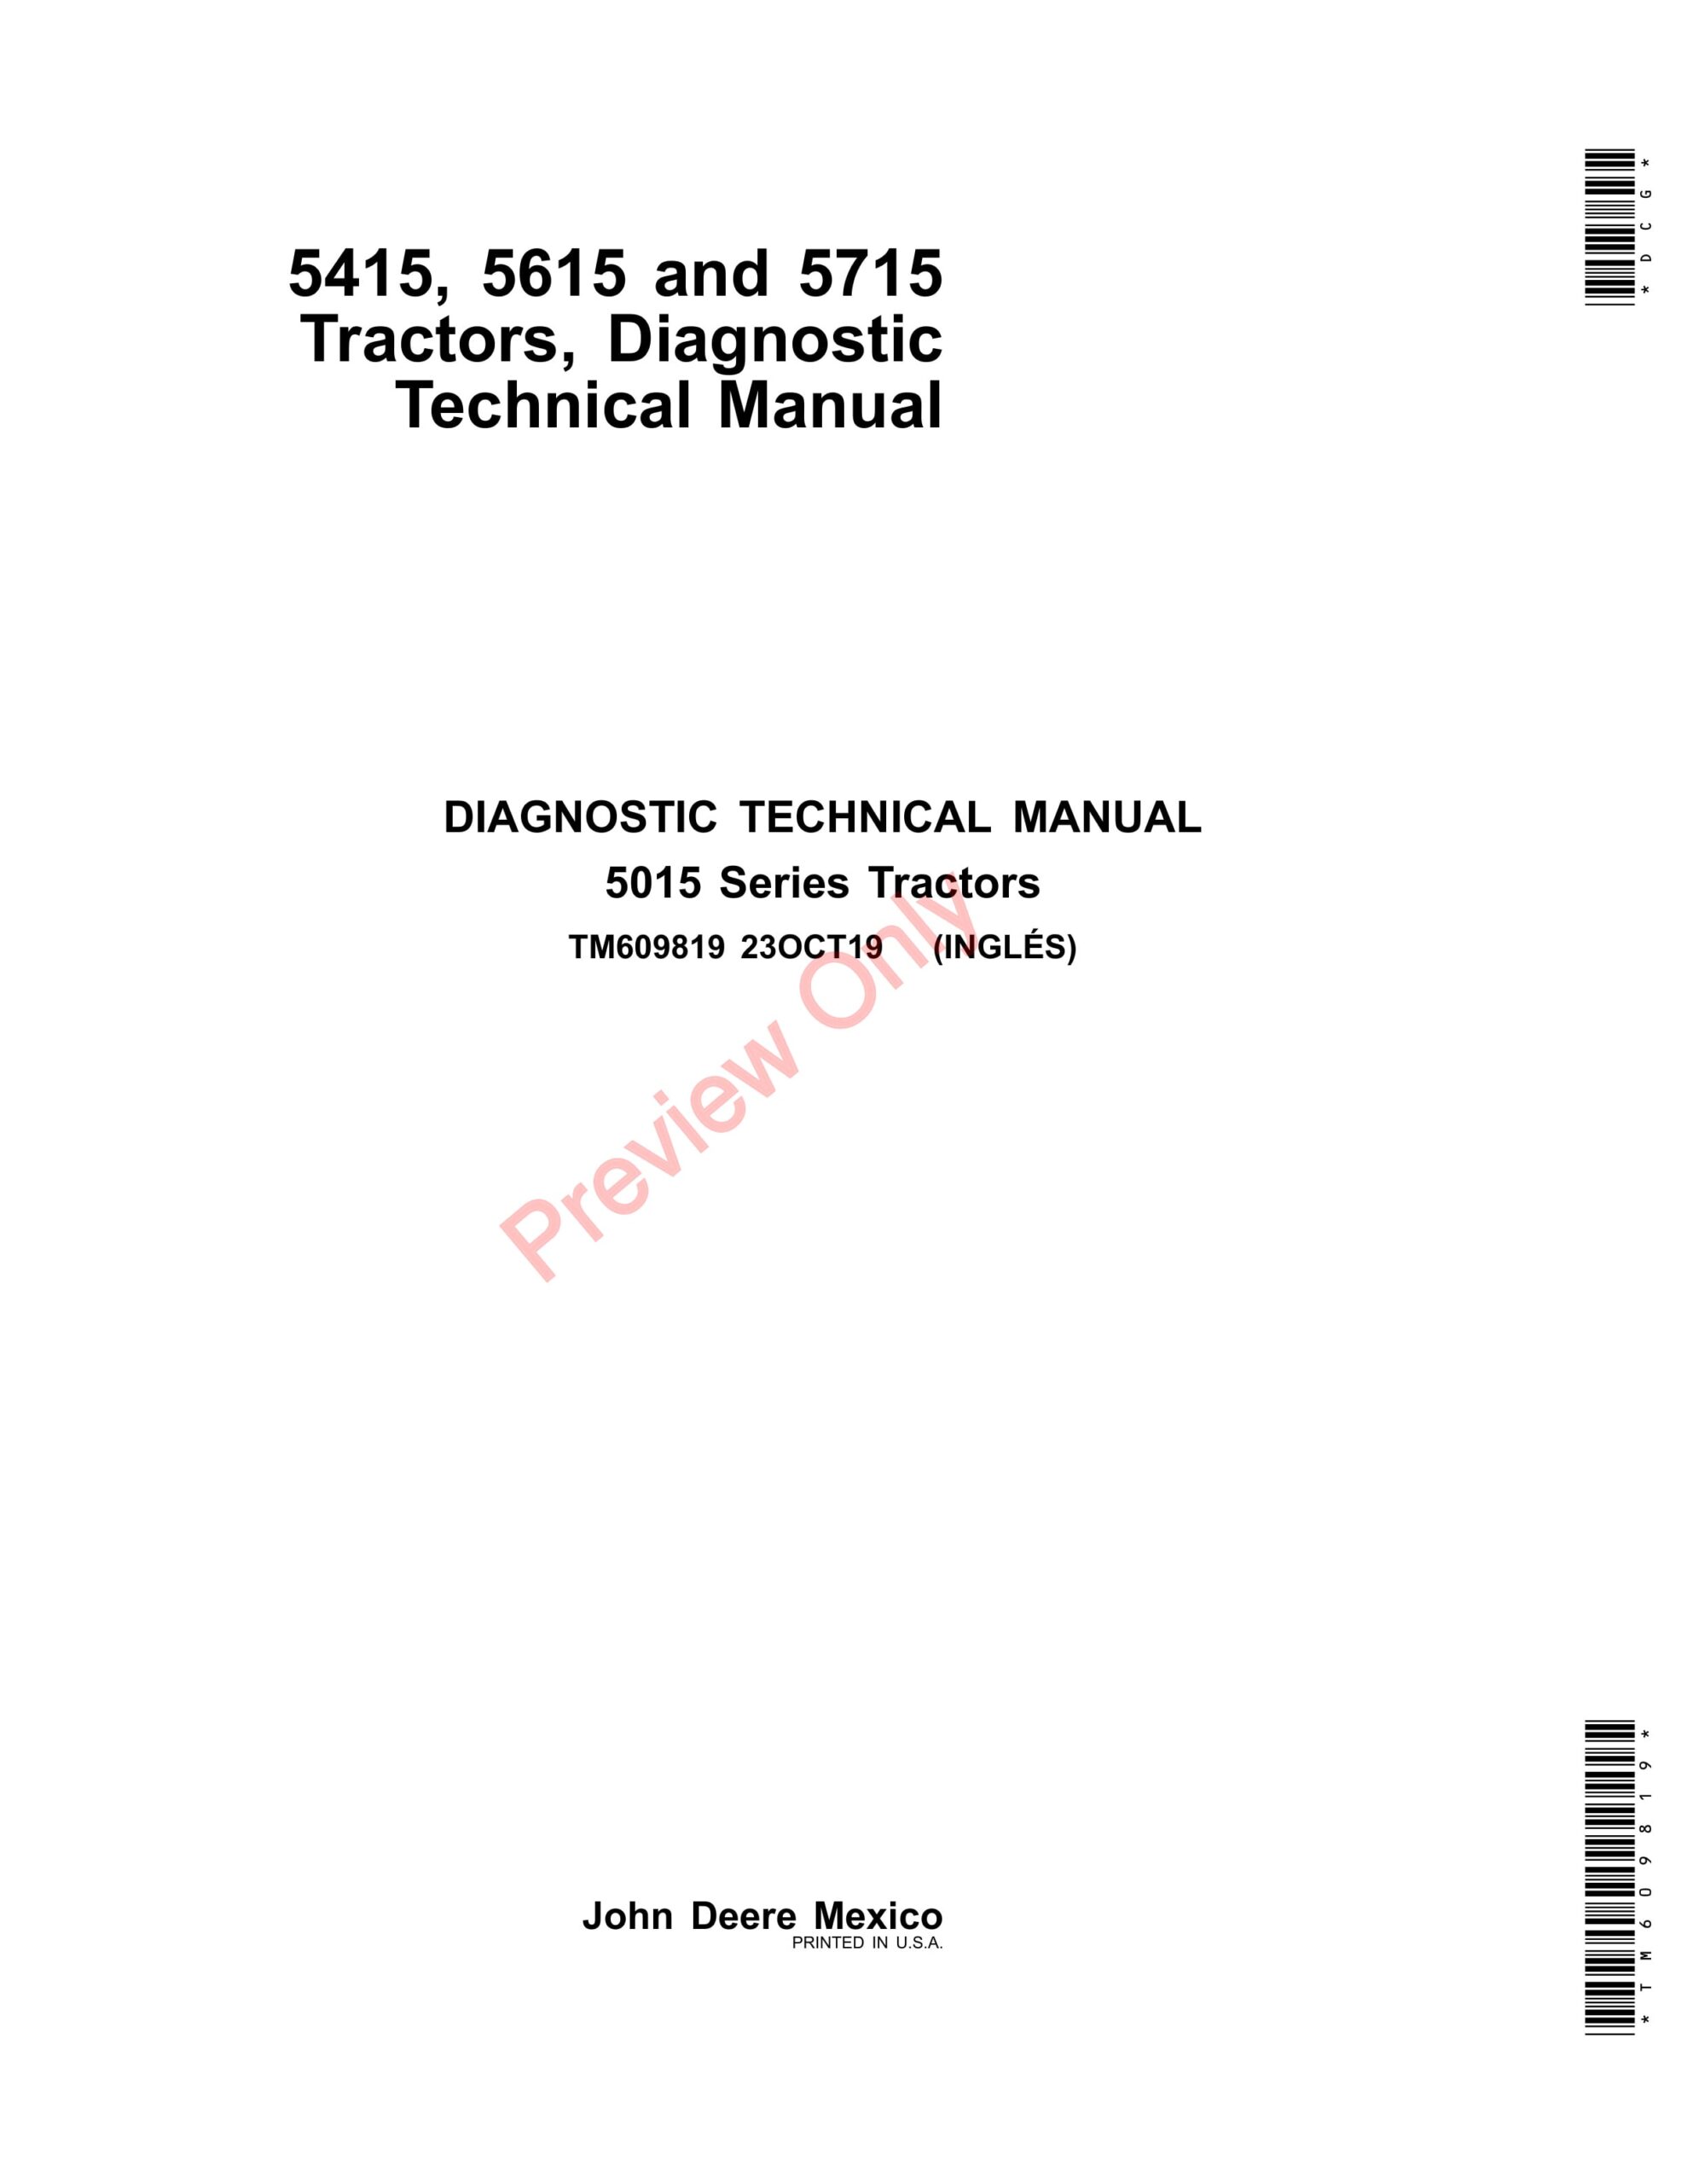 John Deere 5415, 5615 and 5715 Tractors Diagnostic Technical Manual TM609819 23OCT19-1